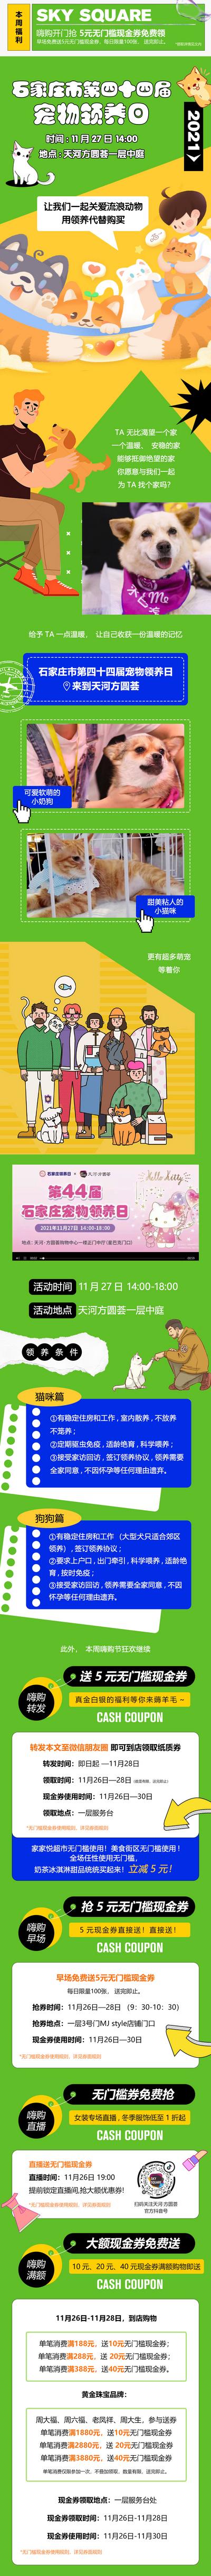 南门网 专题设计 海报 长图 宠物 领养活动 宣传 排版 插画 赛博